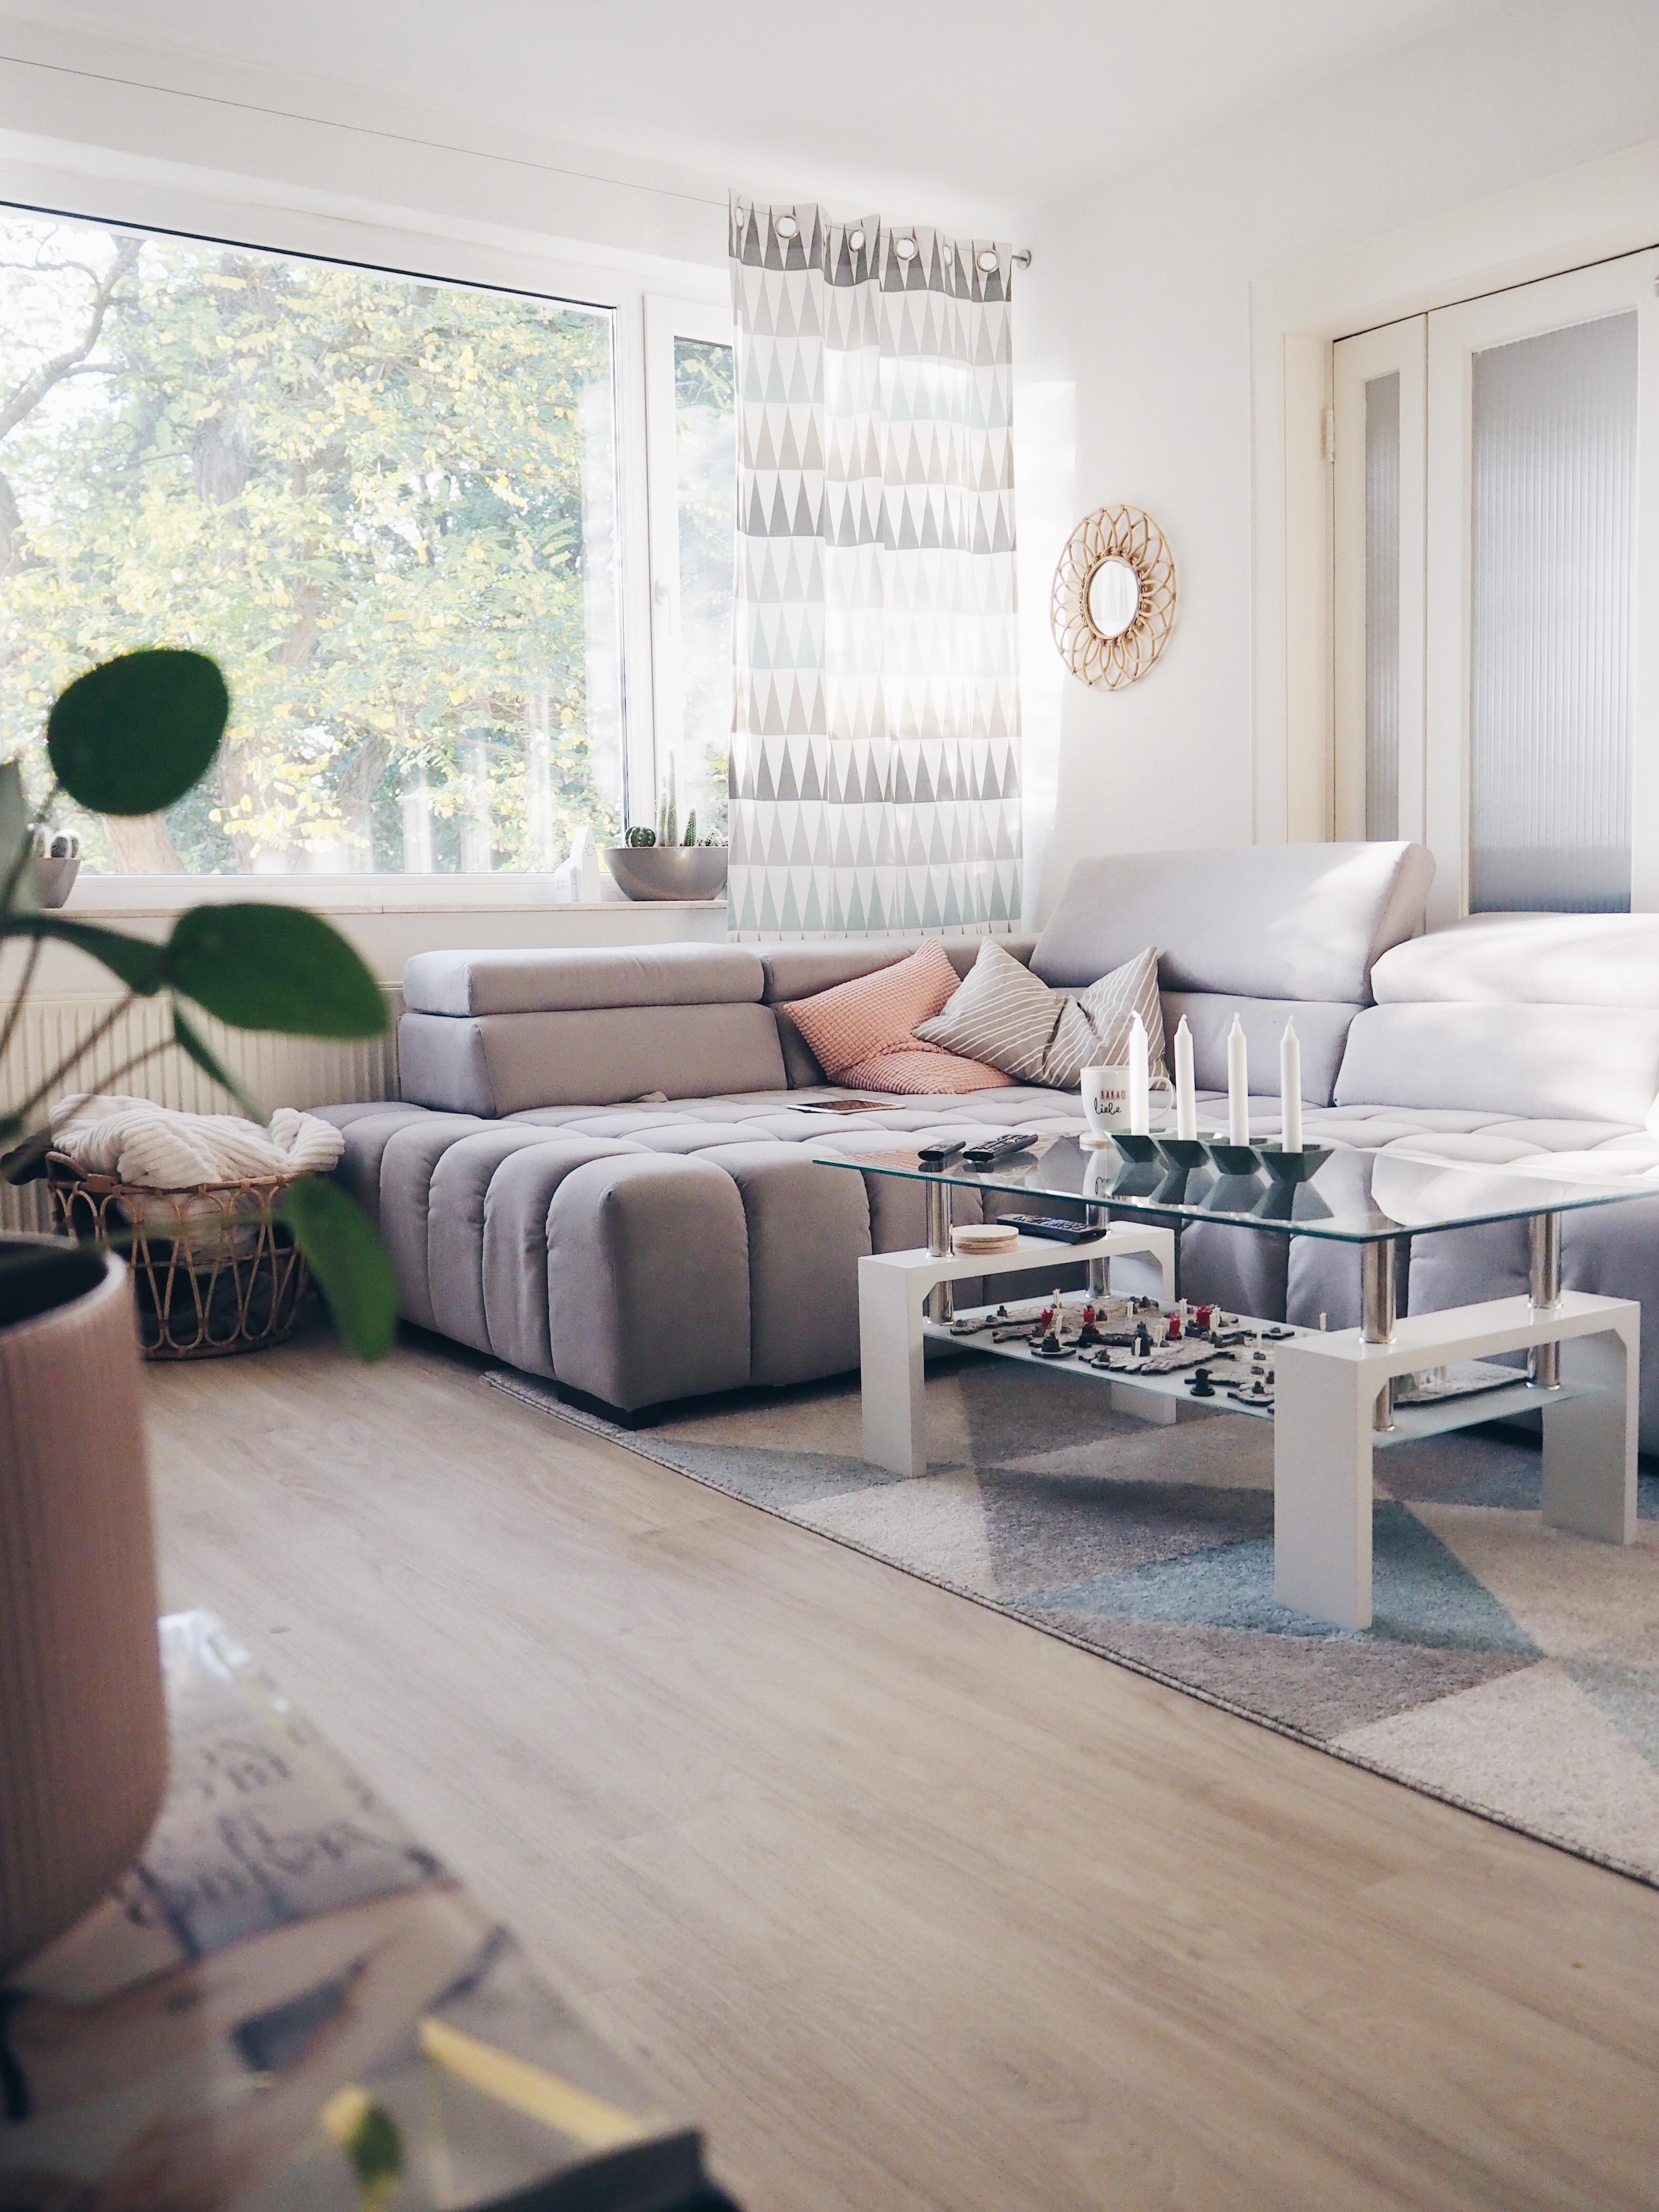 Liebster Ort in der Wohnung: die Couch. #couchstyle
